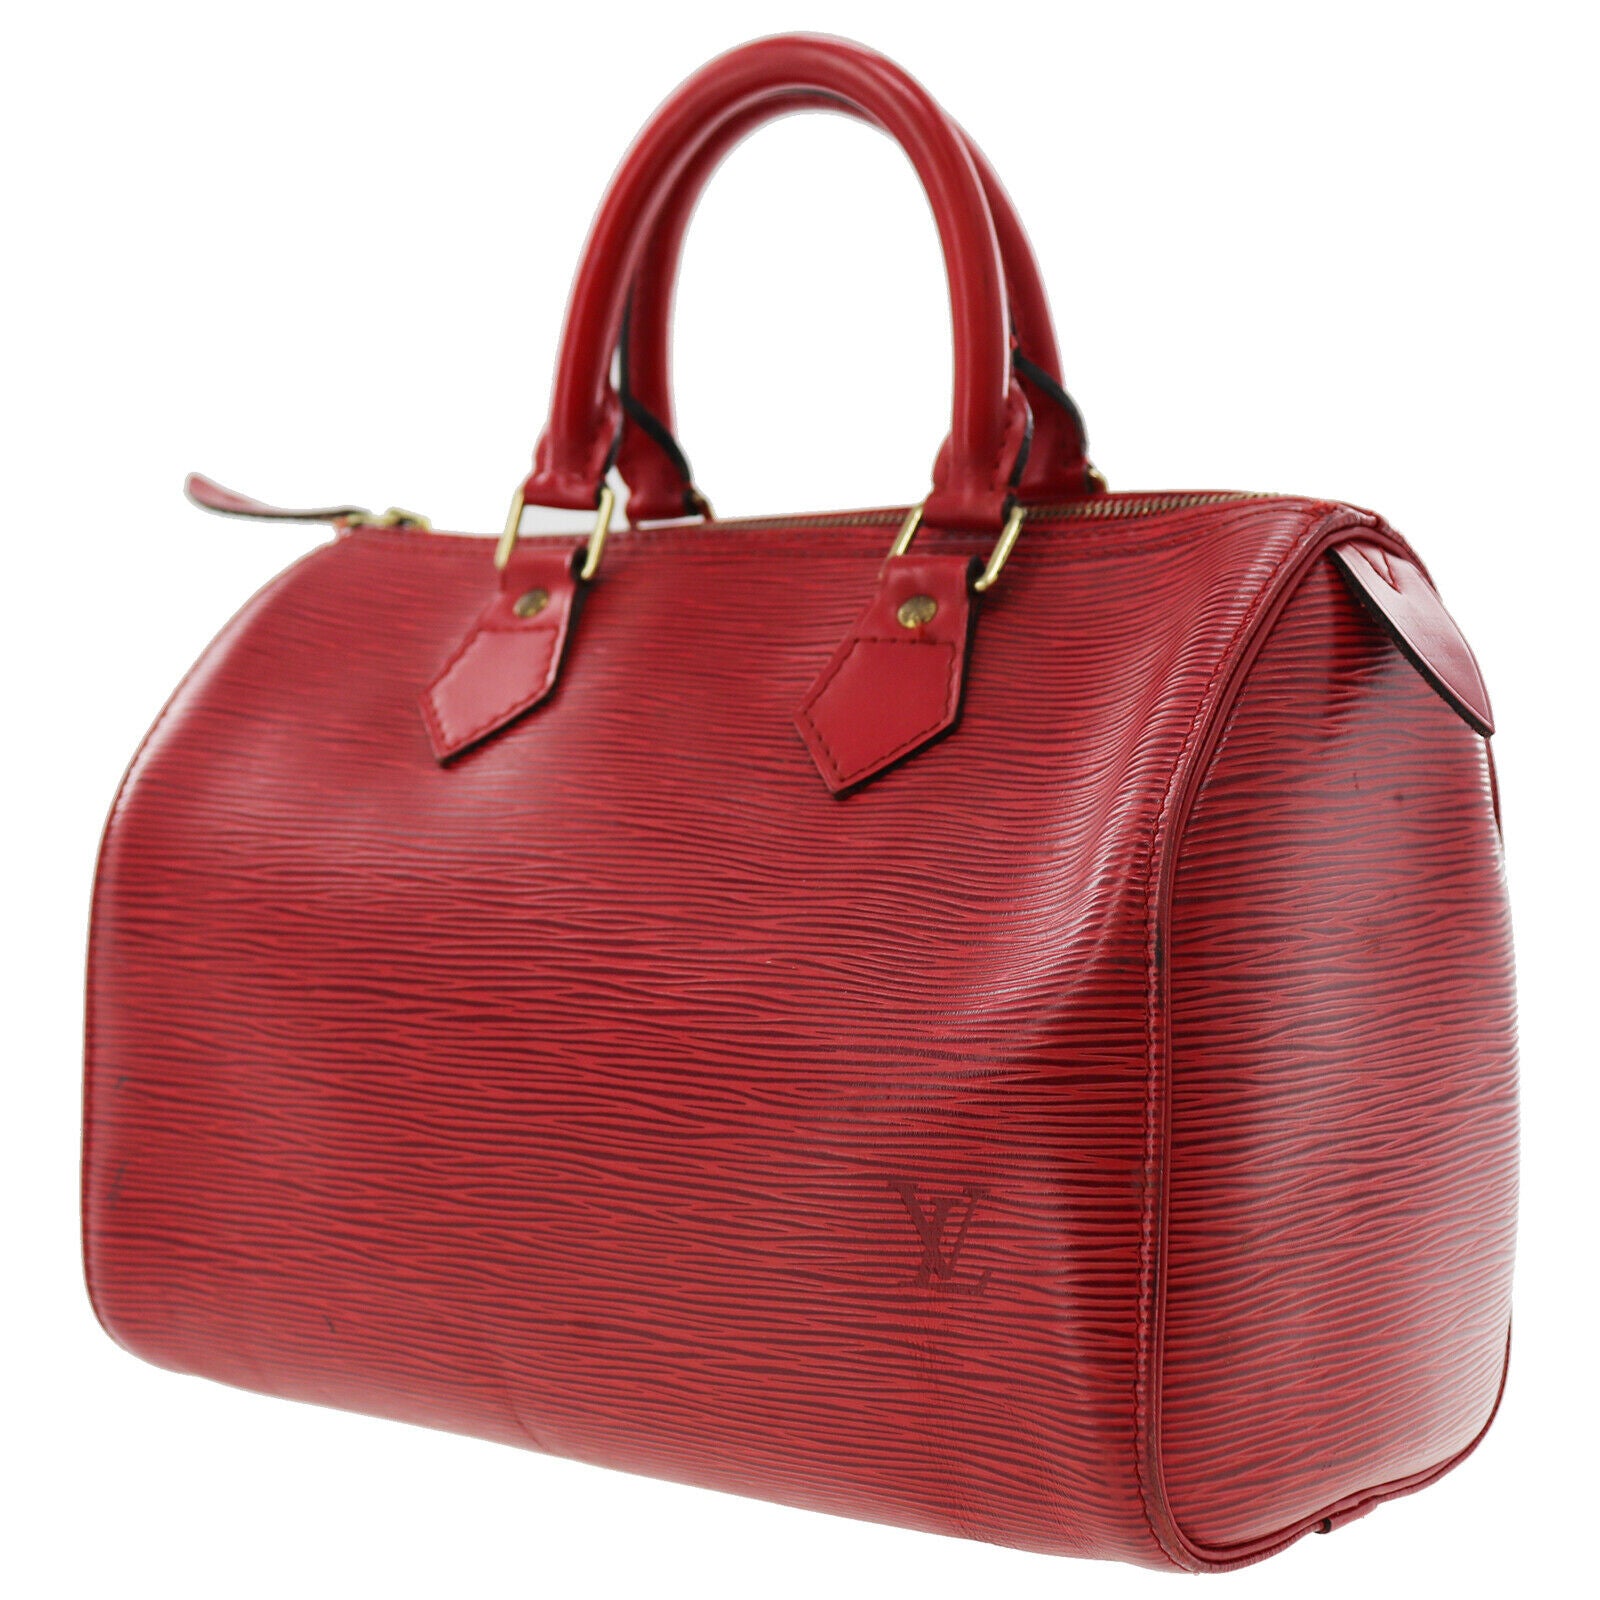 Las mejores ofertas en Carteras para Mujer Rojo Louis Vuitton